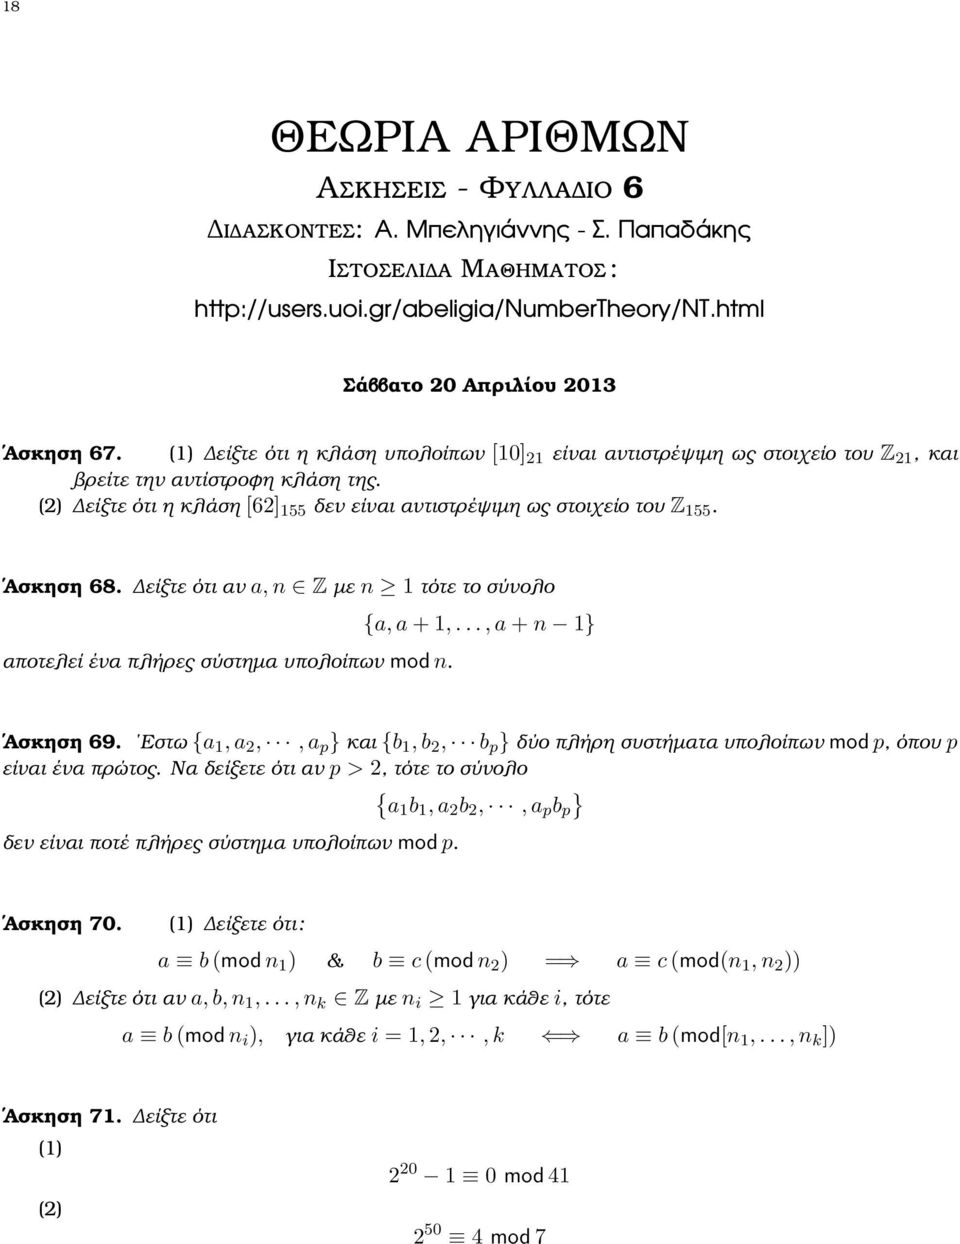 Ασκηση 68. είξτε ότι αν a, n Z µε n 1 τότε το σύνολο αποτελεί ένα πλήρες σύστηµα υπολοίπων mod n. {a, a + 1,..., a + n 1} Ασκηση 69.